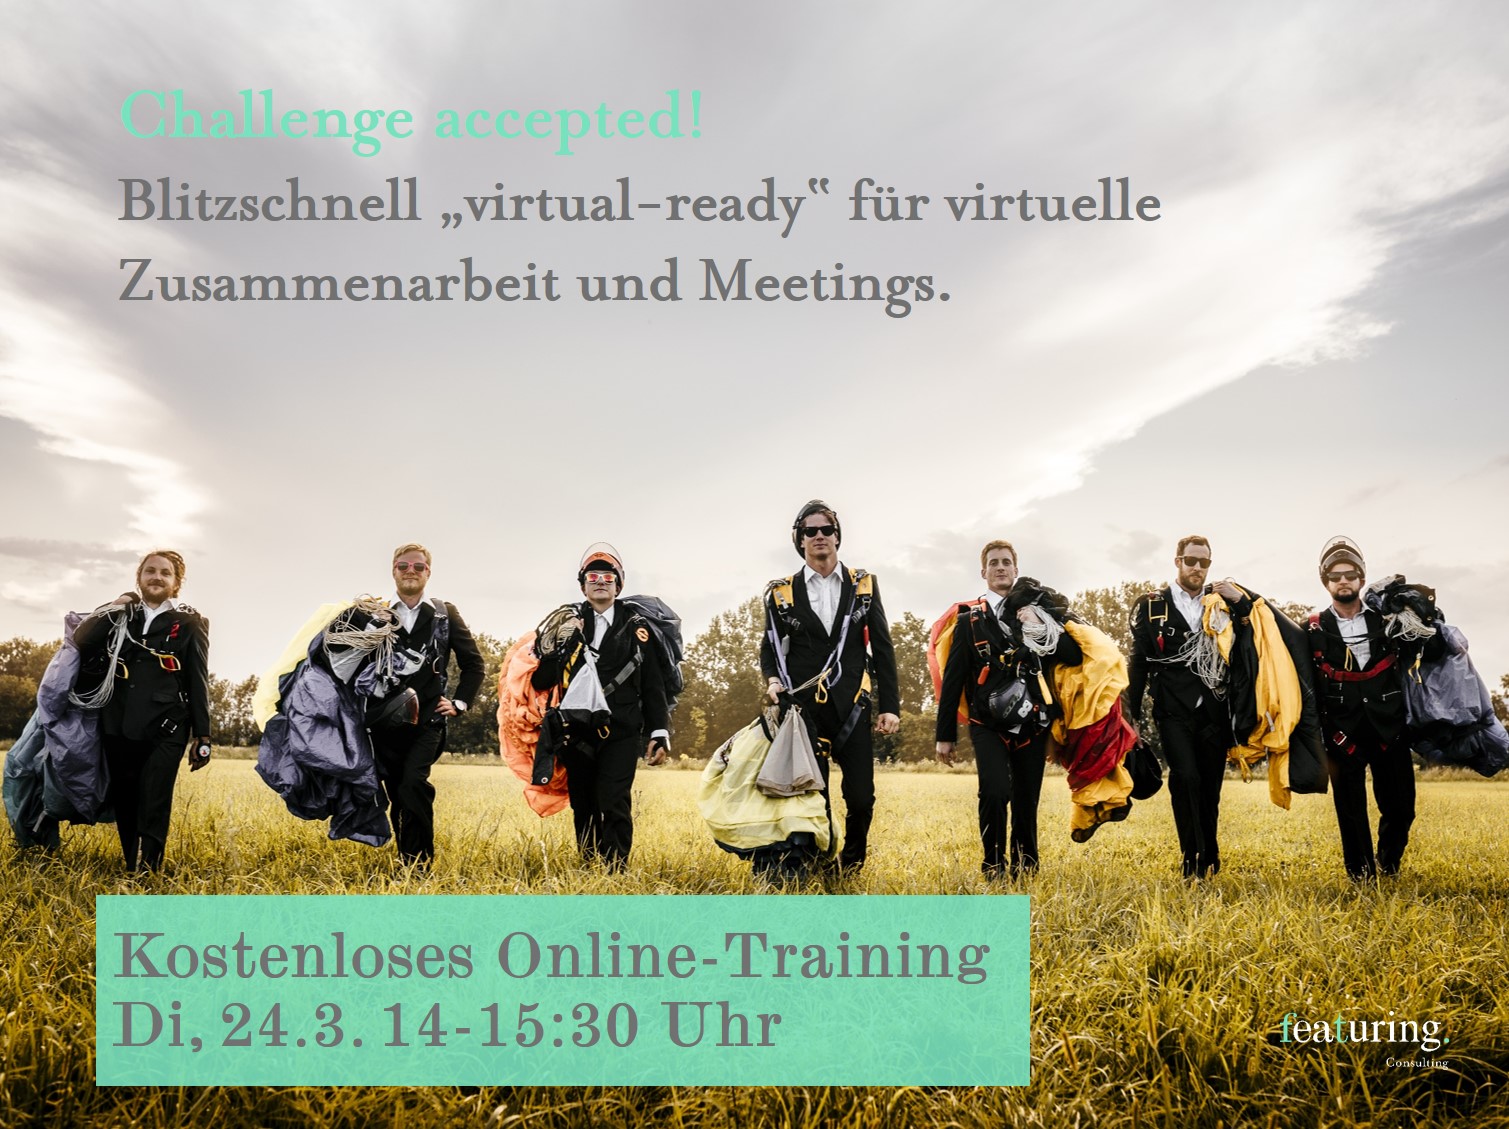 Challenge accepted: Online Training am 24.03.2020, 14:00 – 15:30 Uhr.